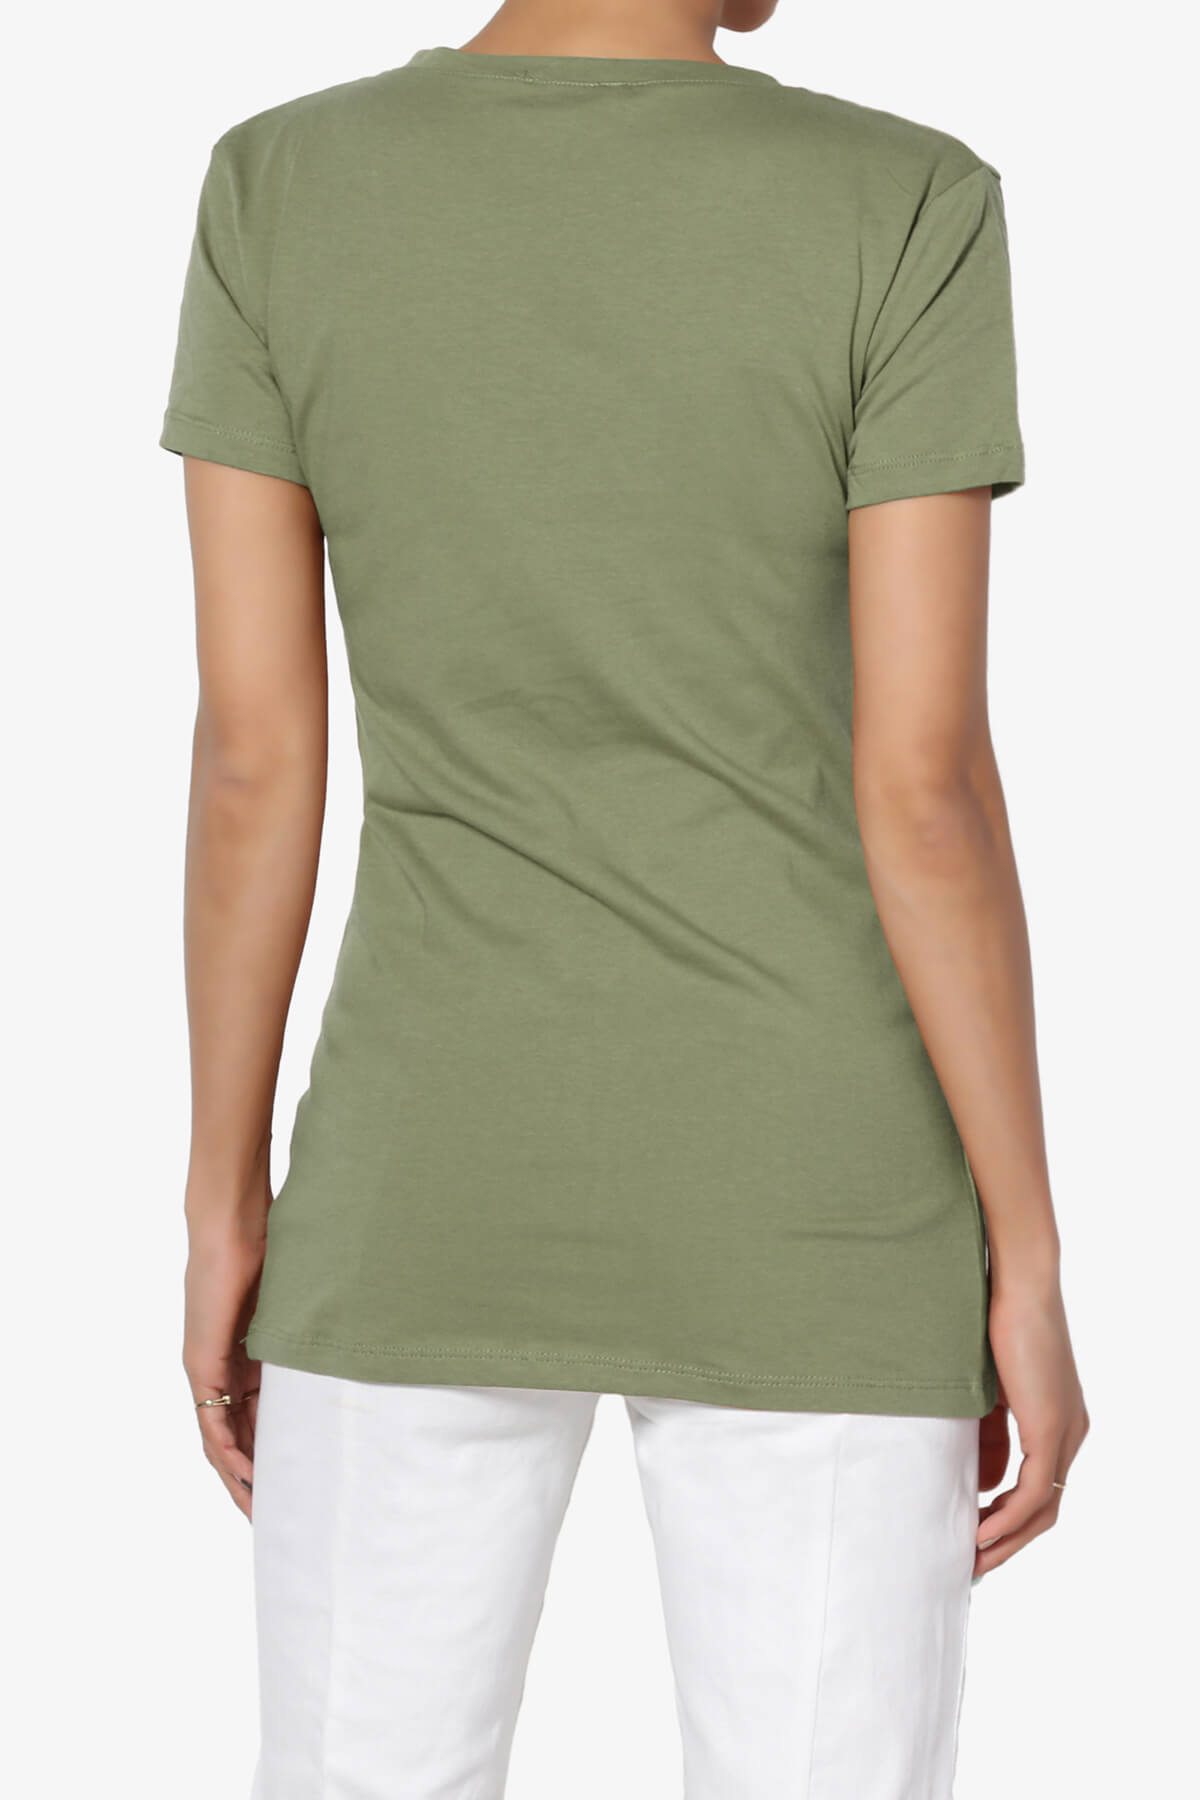 Candela V-Neck Short Sleeve T-Shirts DUSTY OLIVE_2